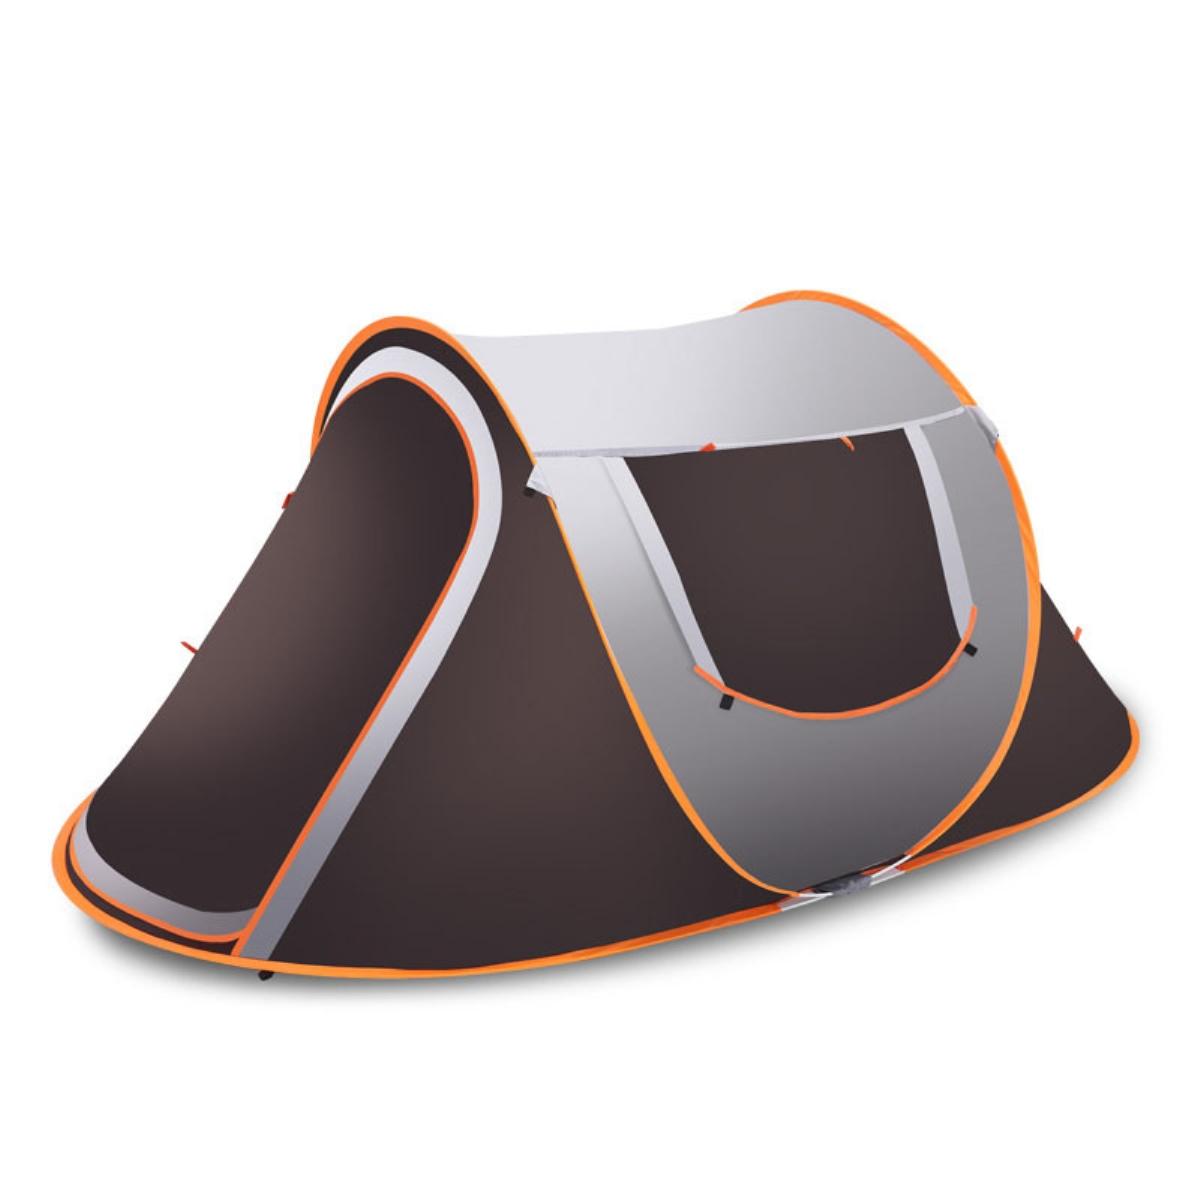 Раздвижная палатка на 3-4 человека для кемпинга и походов, водонепроницаемая, солнцезащитная крыша и защита от дождя.